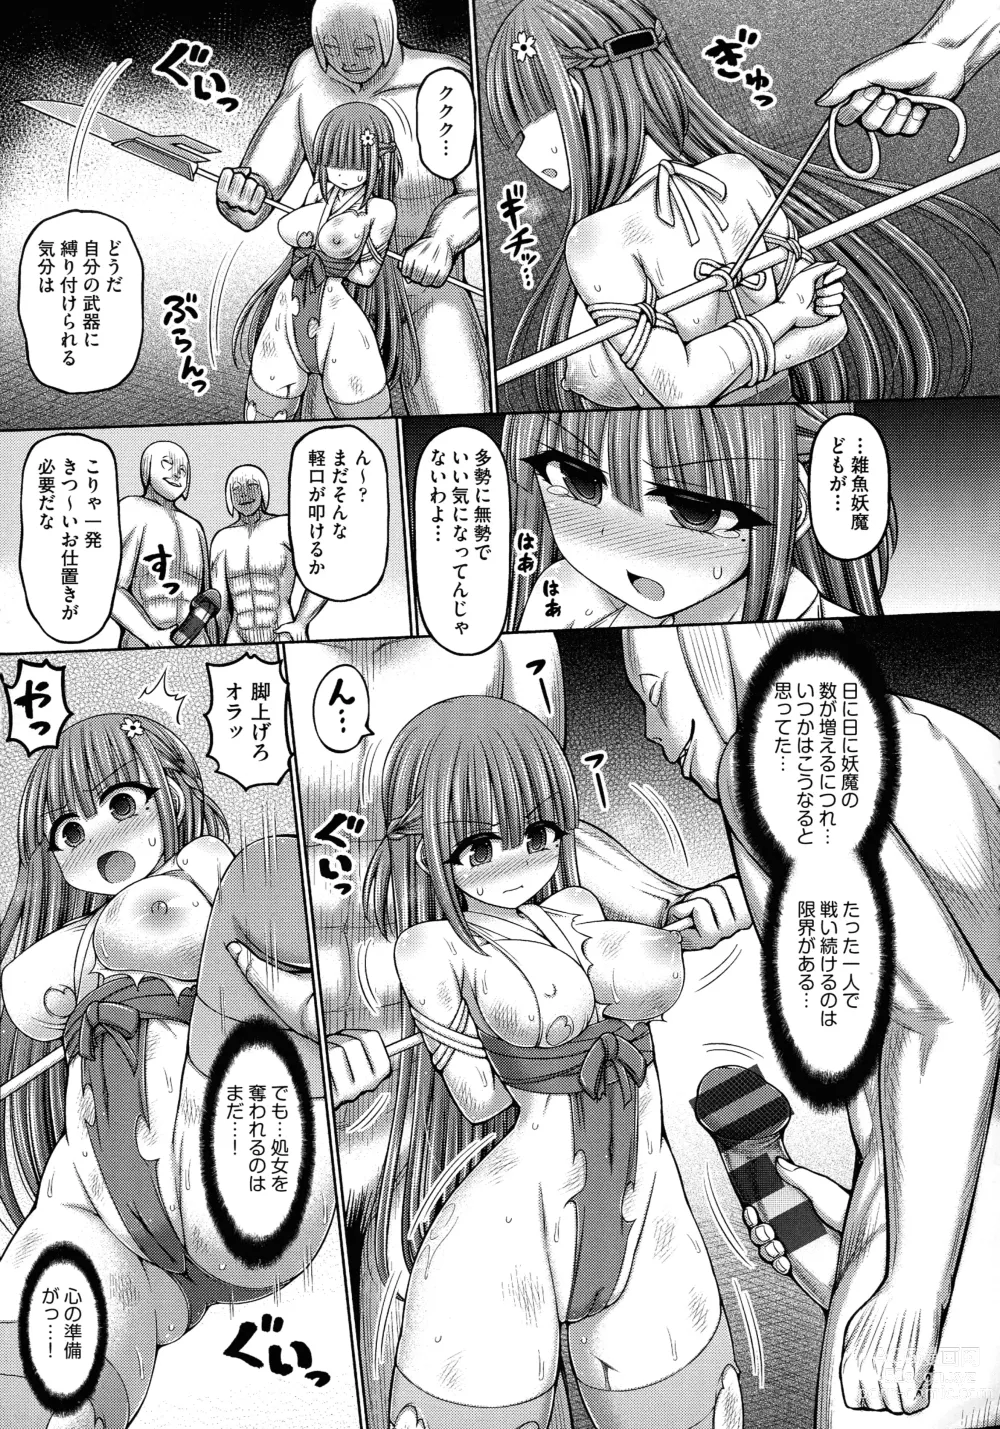 Page 187 of manga Jujutsushi ni Tensei Shita node Koujo Zenin Dorei ni Shite Mita